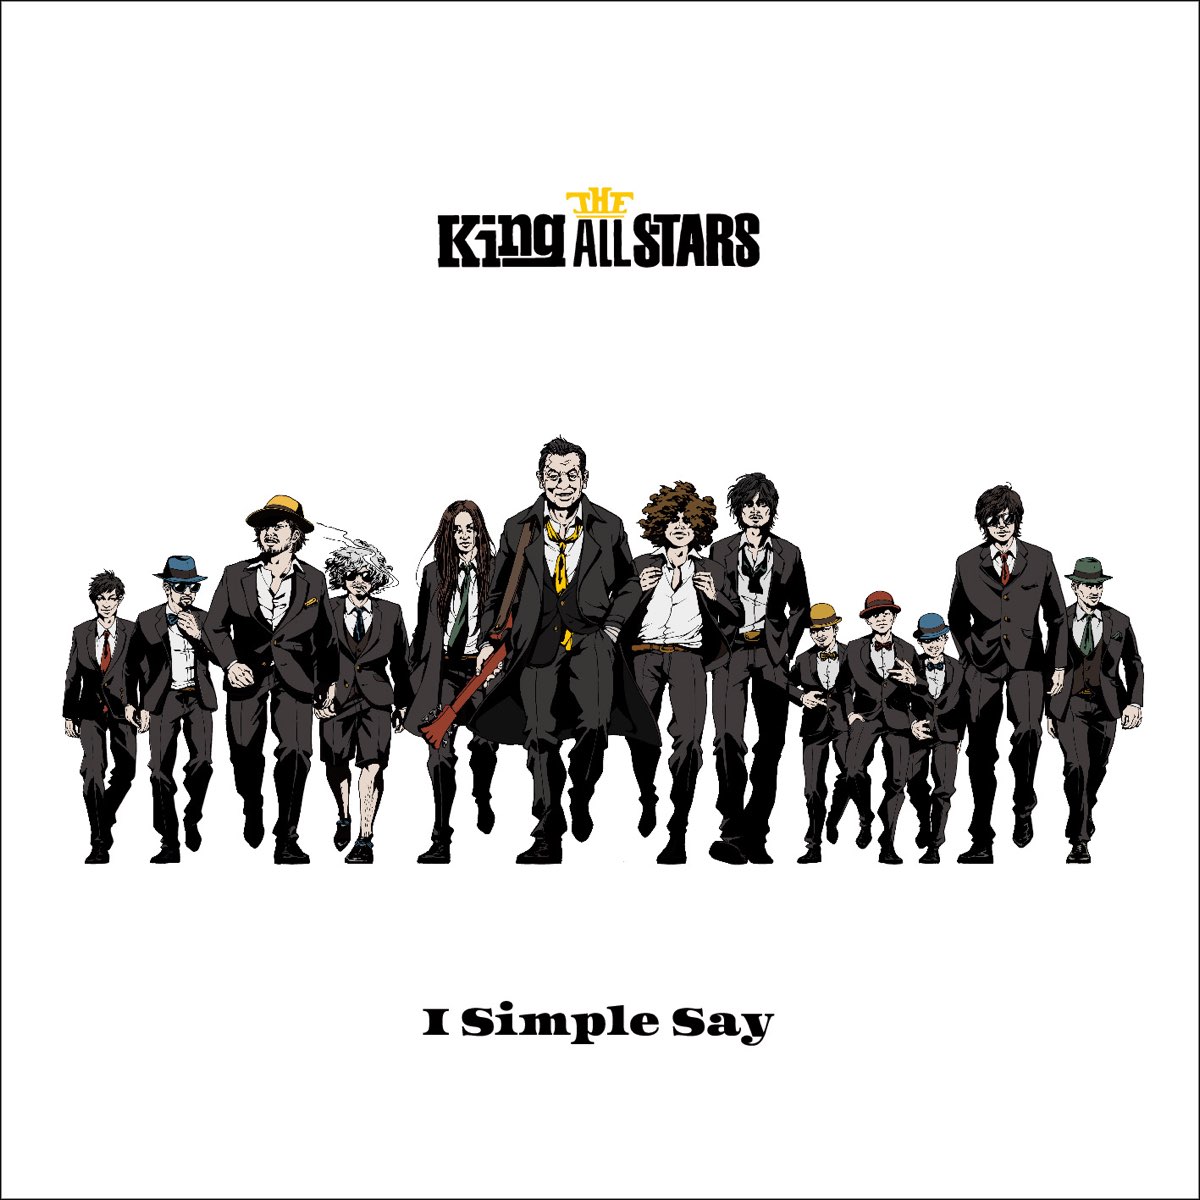 All Stars музыкальная группа. All Kings. All Star песня. Simon says CD. Simply said